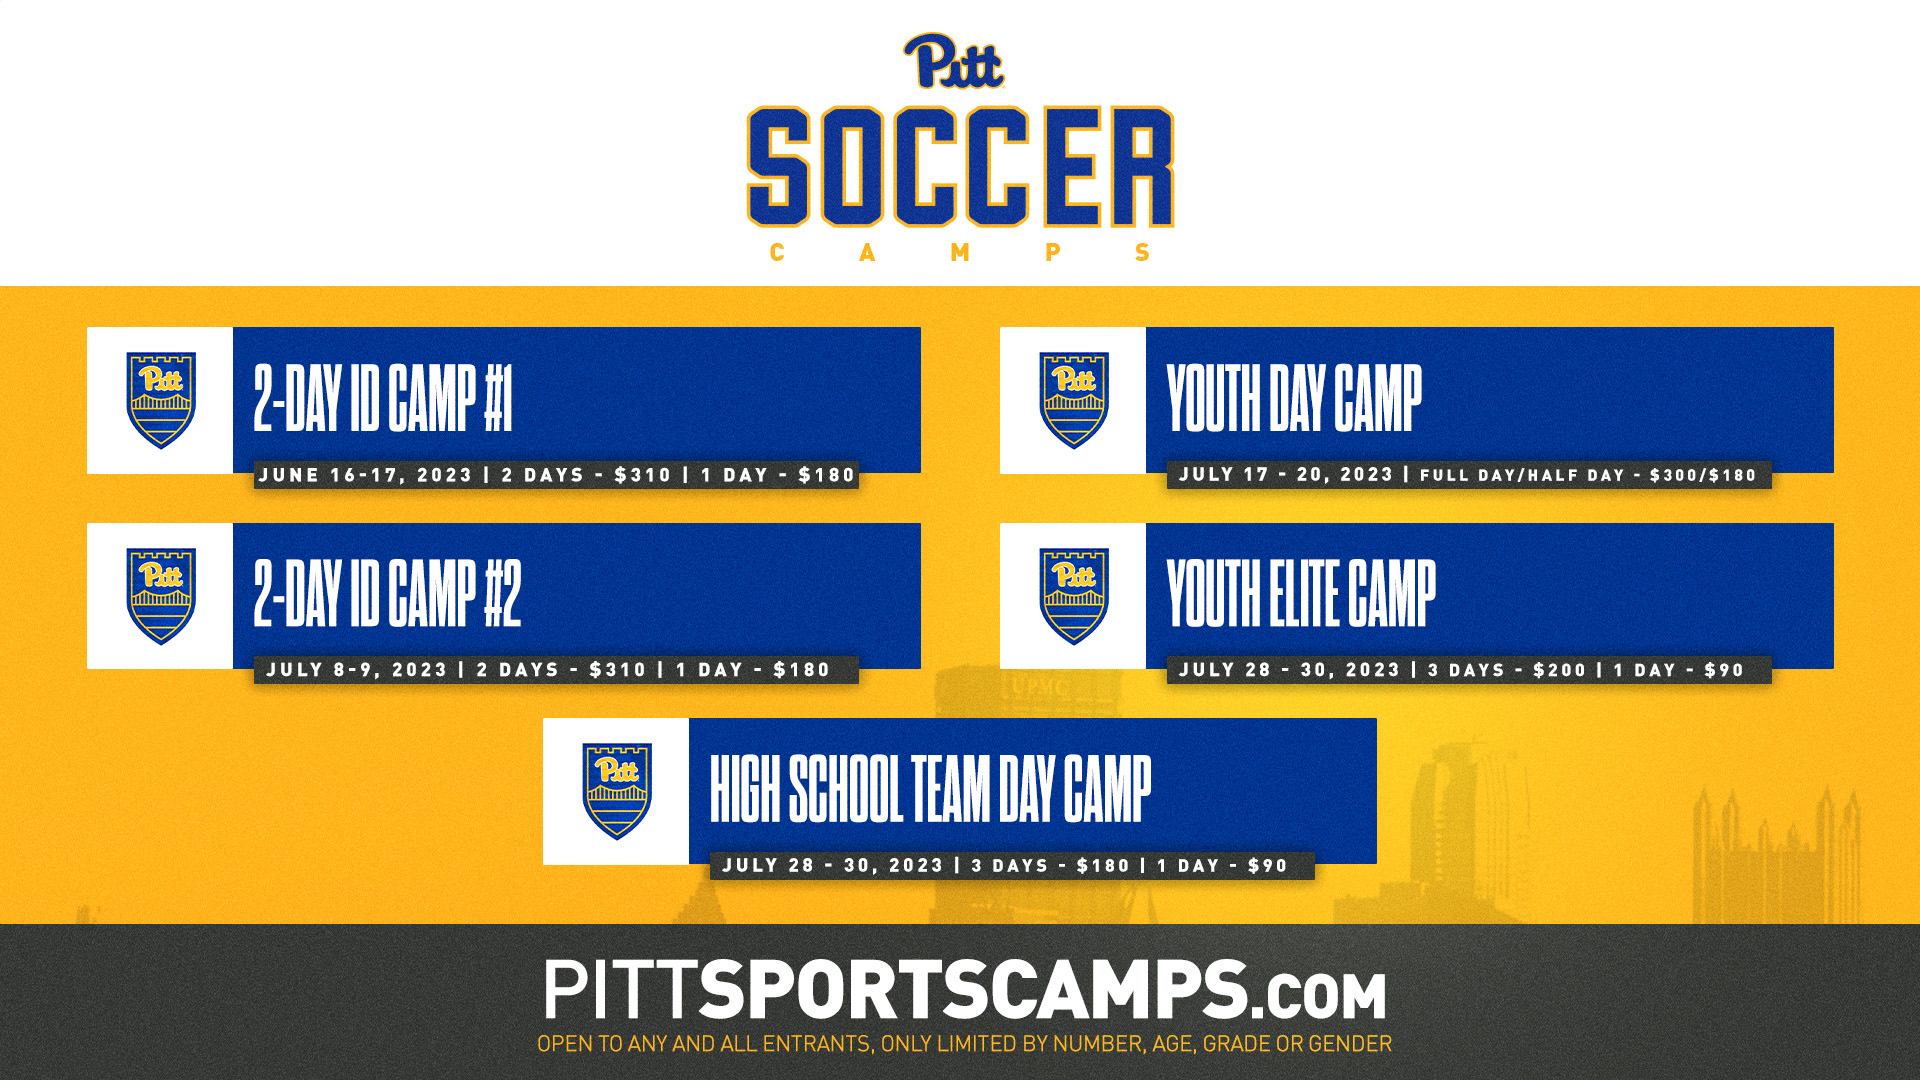 pitt-soccer-camps